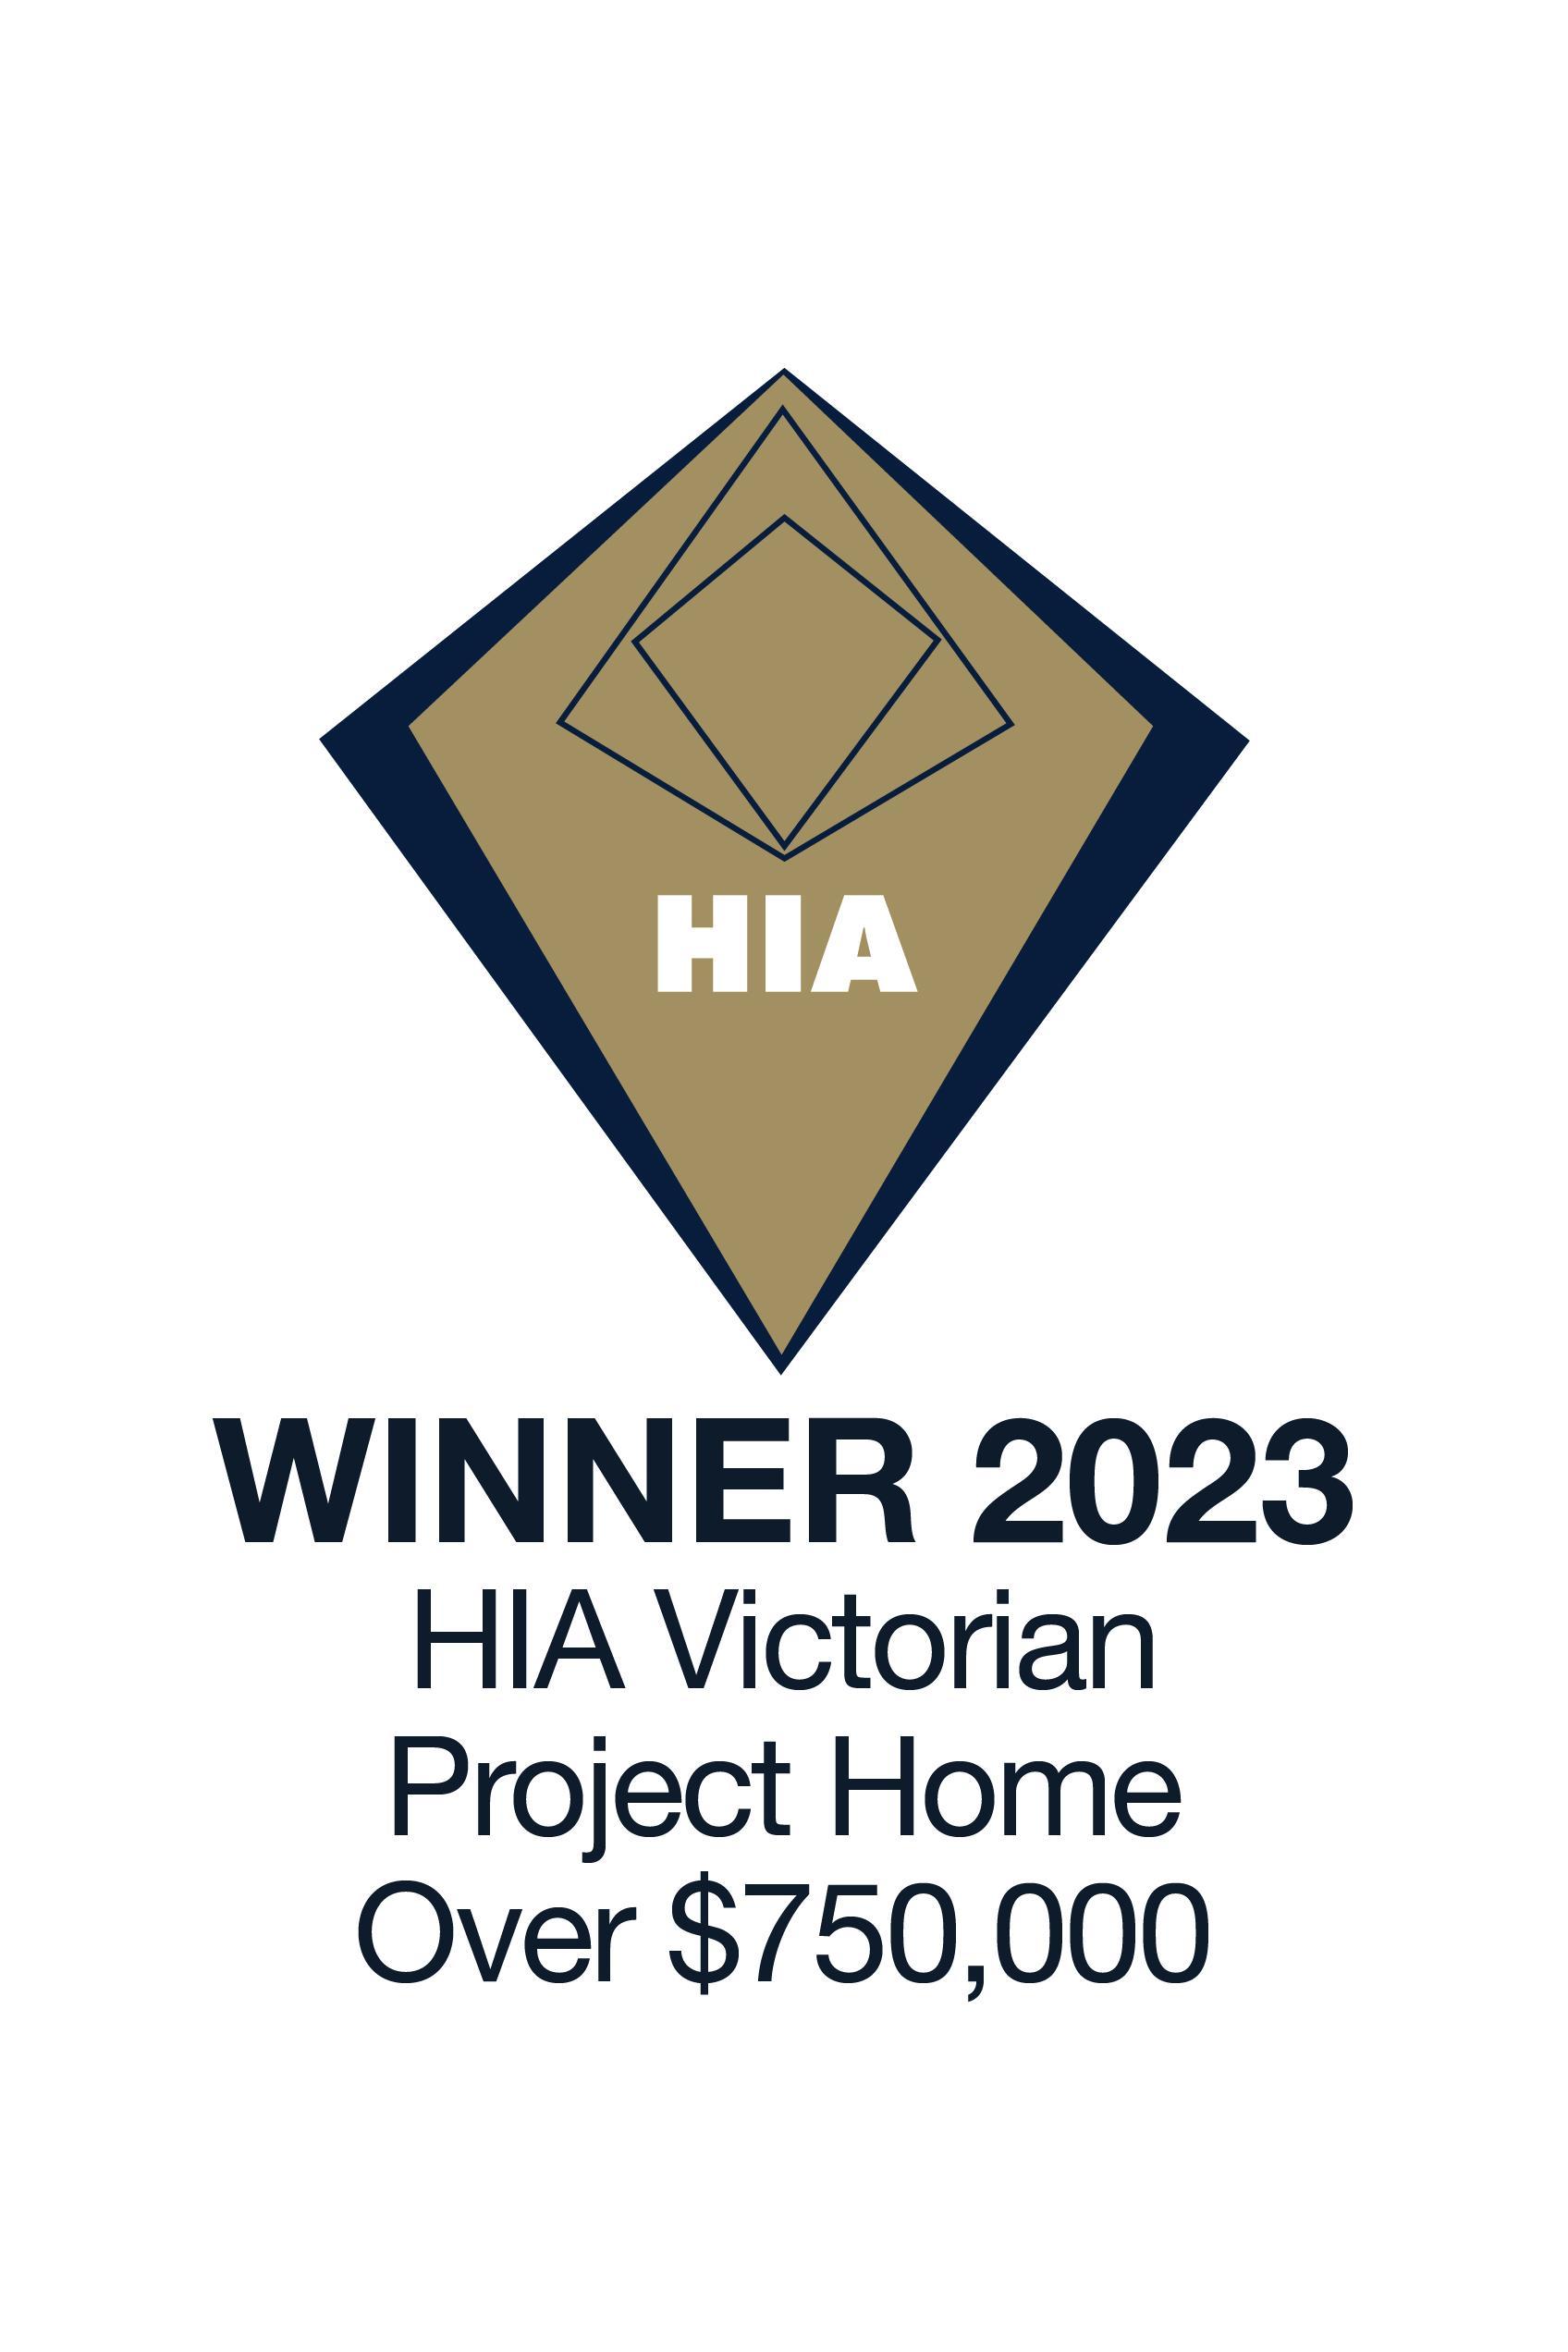 HIA Victoria Winner Award 2023 Project Home Over $750,000